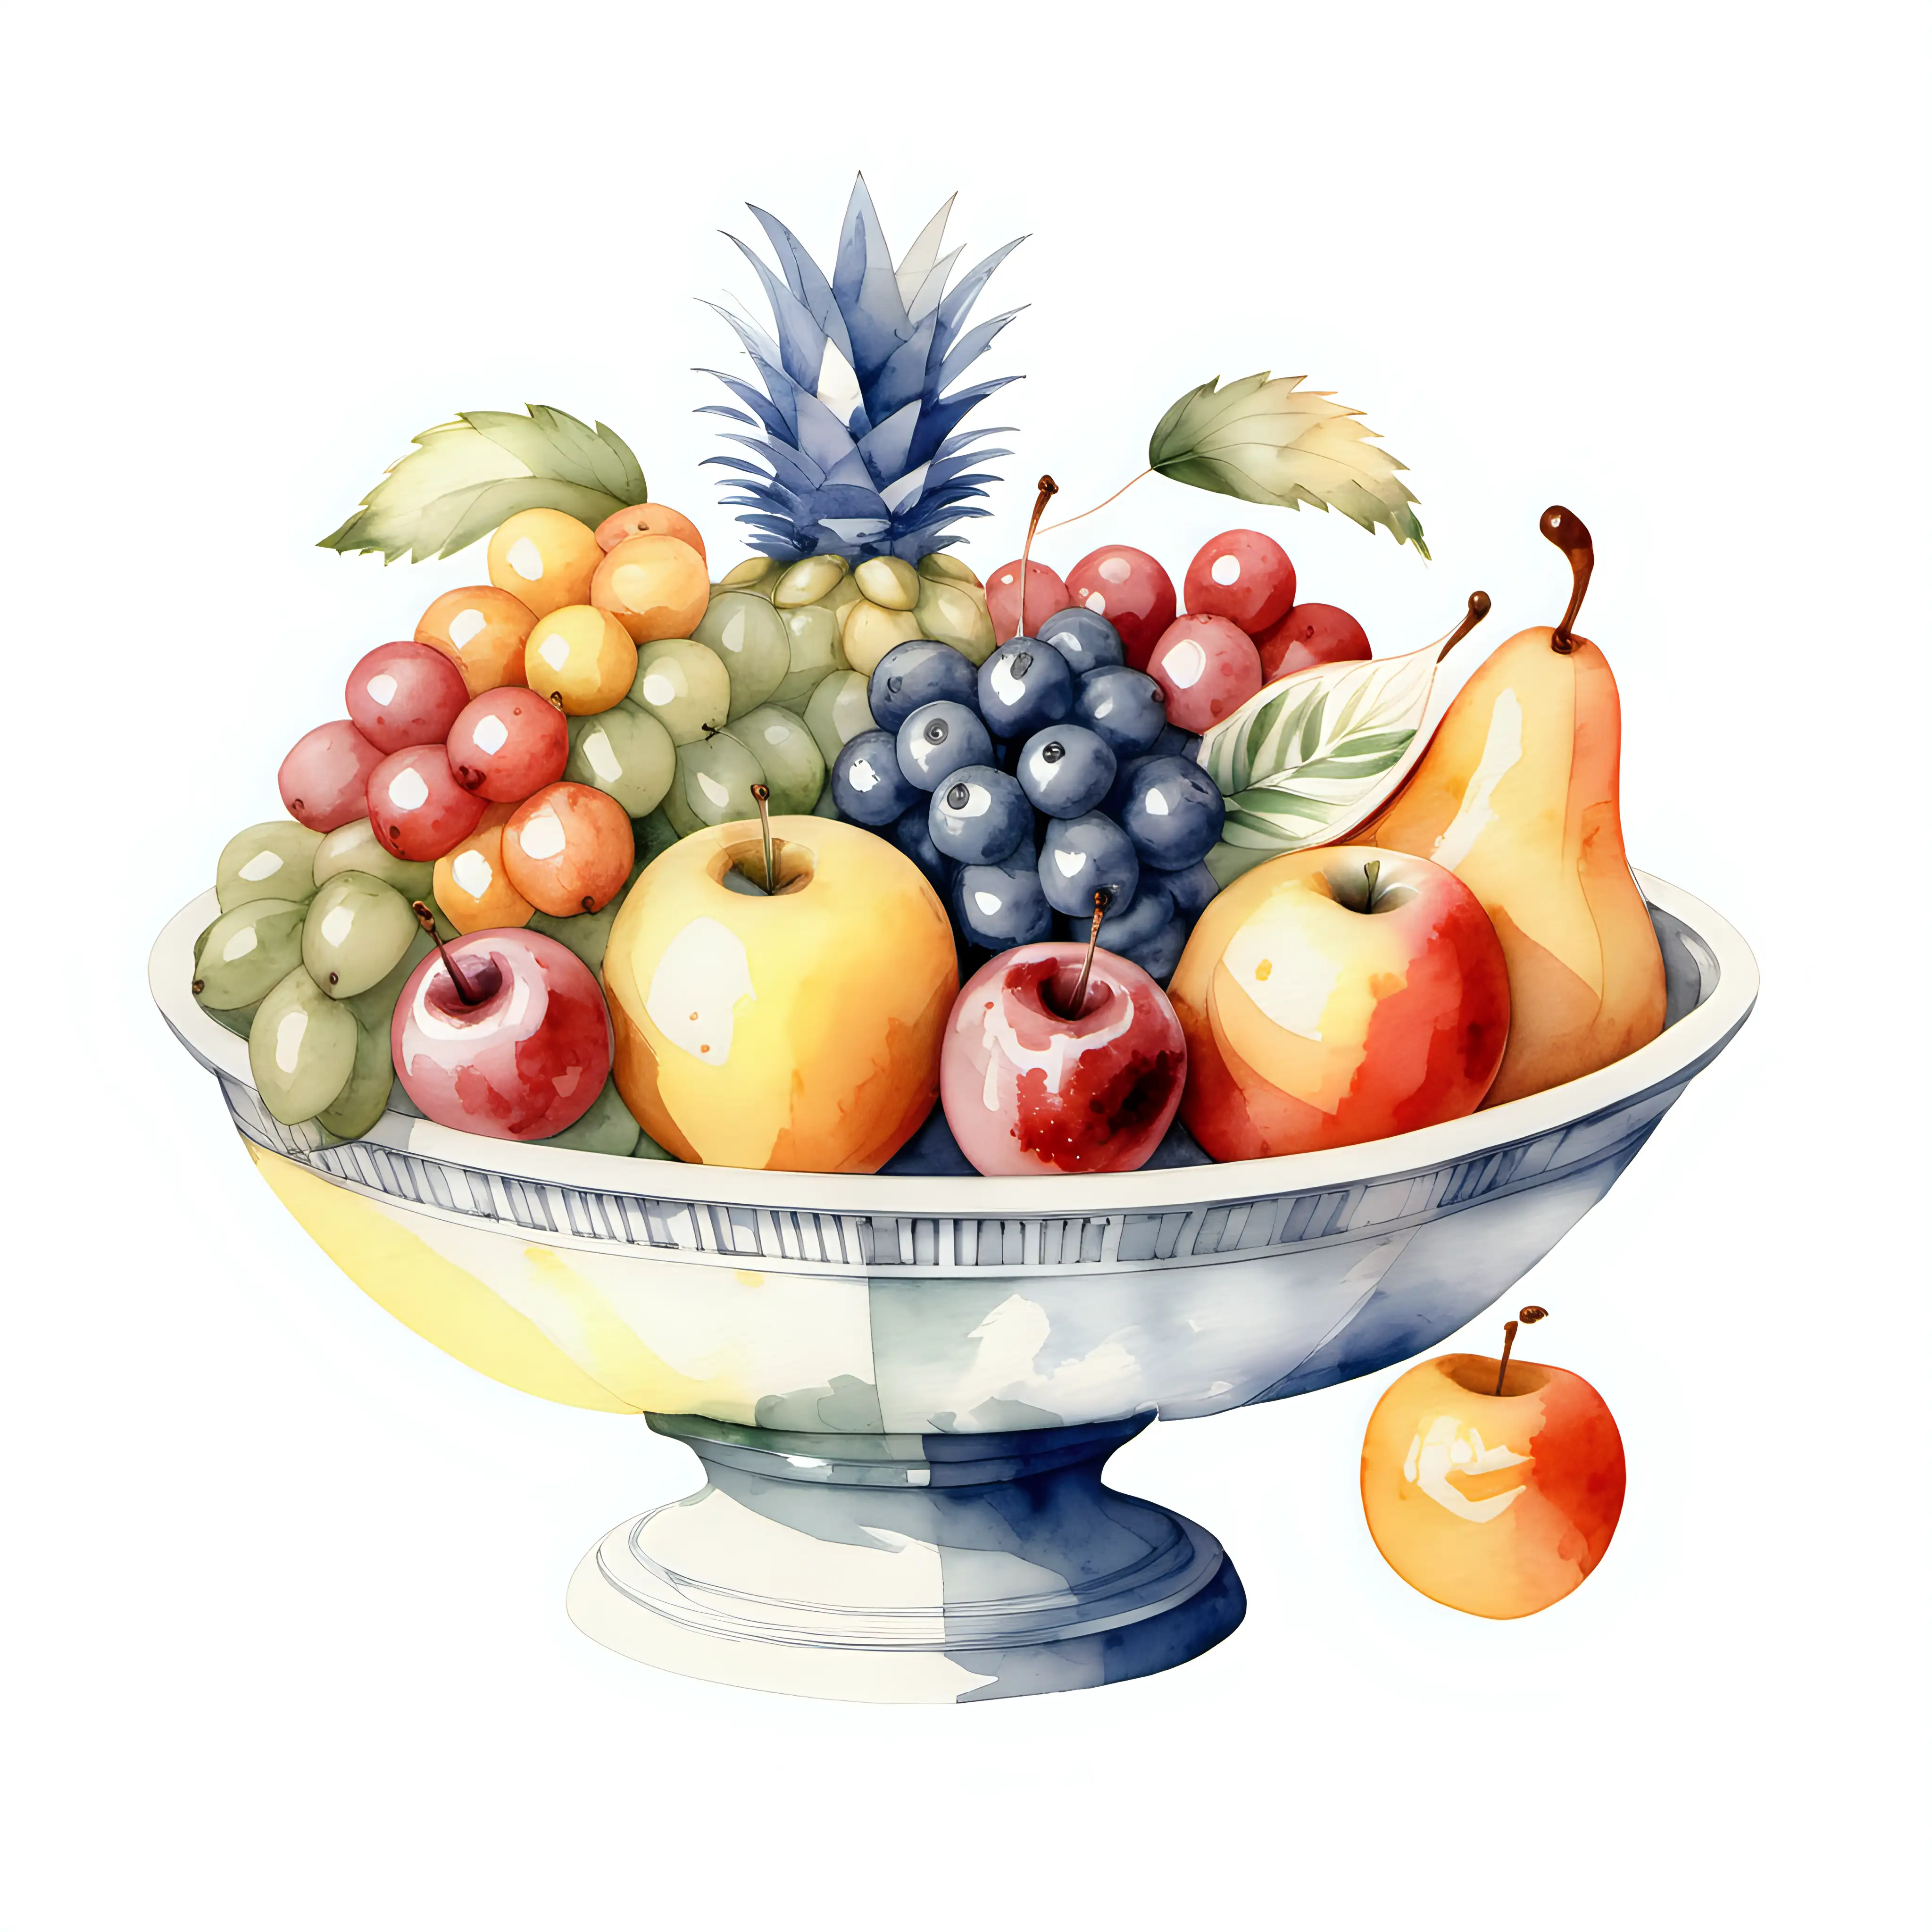 Vintage style watercolour fruit bowl on plain white background